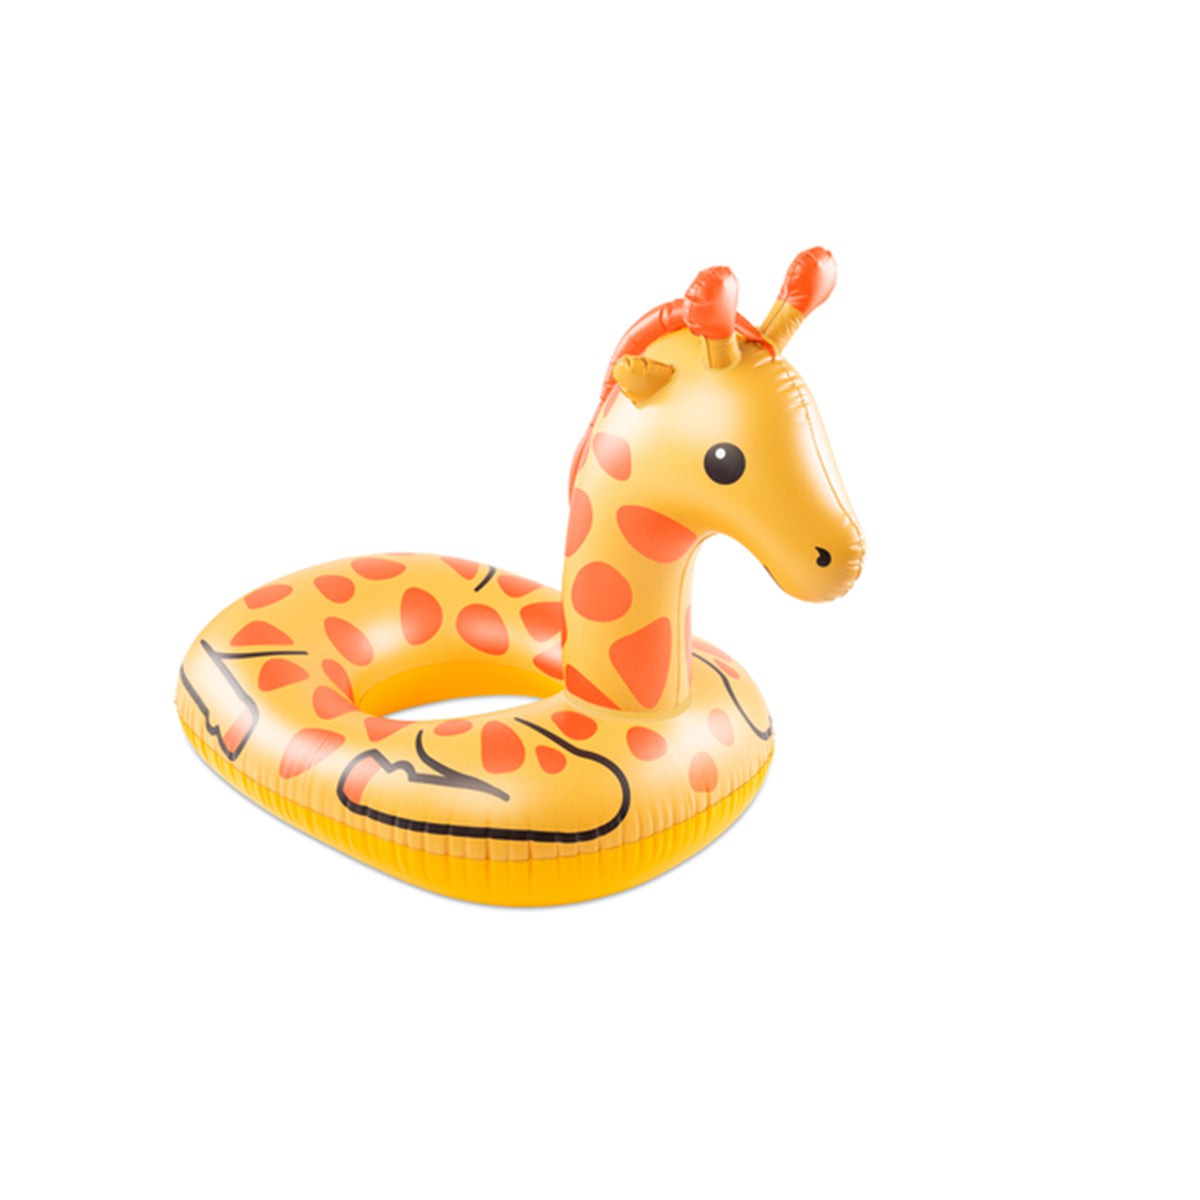 STORTZ TOYS Summer Giraffe Pool Float 840092704239